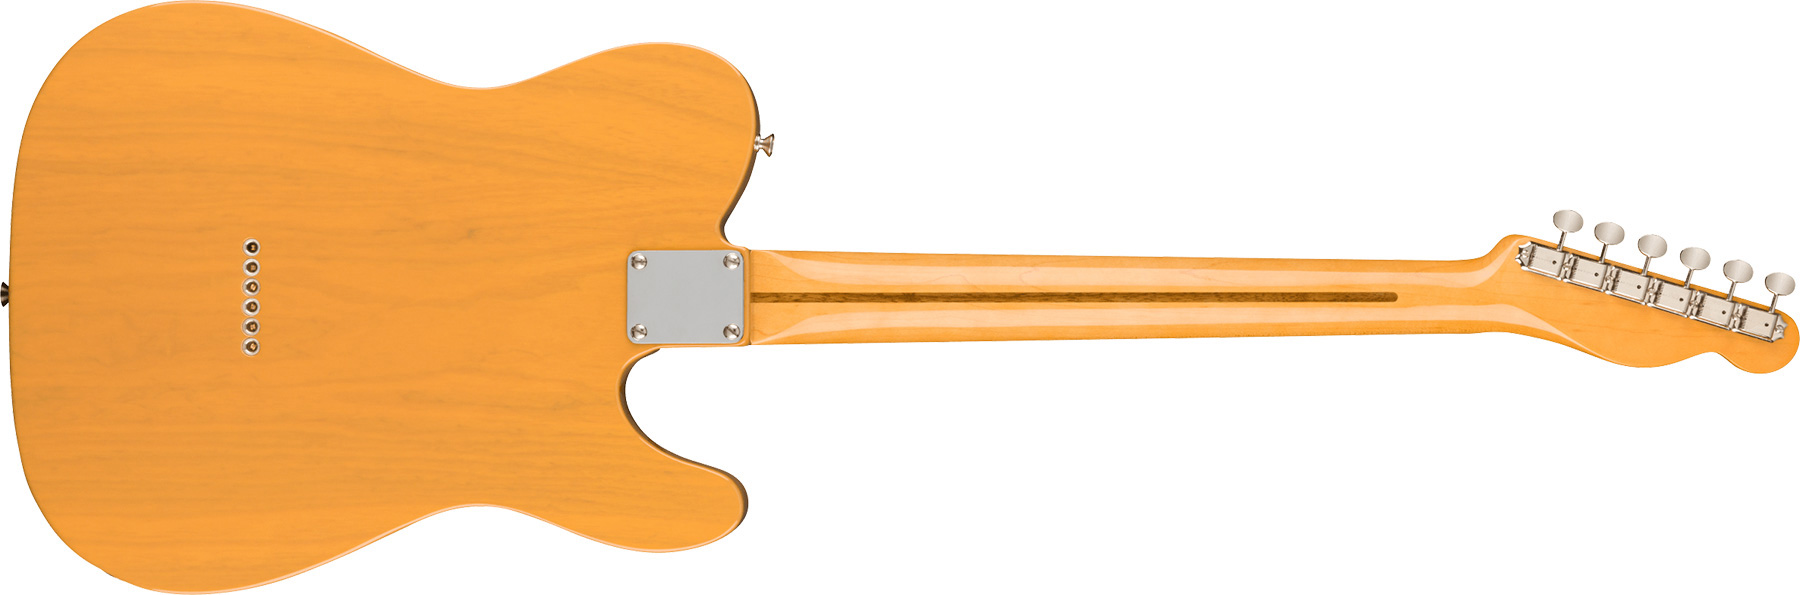 Fender Tele 1951 American Vintage Ii Lh Gaucher 2s Ht Mn - Butterscotch Blonde - Guitarra electrica para zurdos - Variation 1